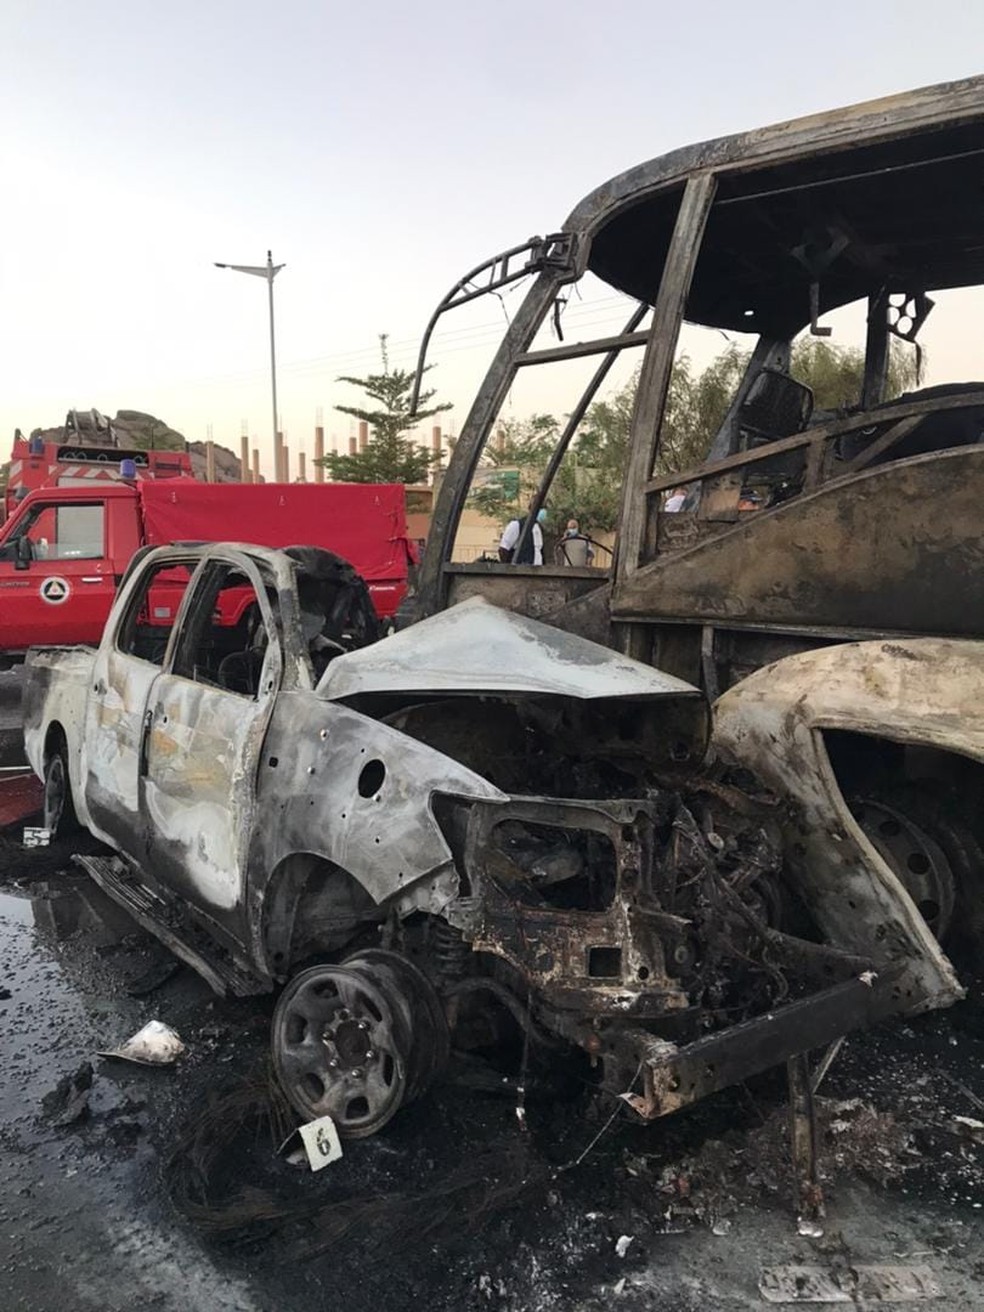 Imagem mostra ferragens de carro e ônibus envolvidos em acidente de trânsito na Argélia — Foto: Reprodução/Segurança Civil da Argélia